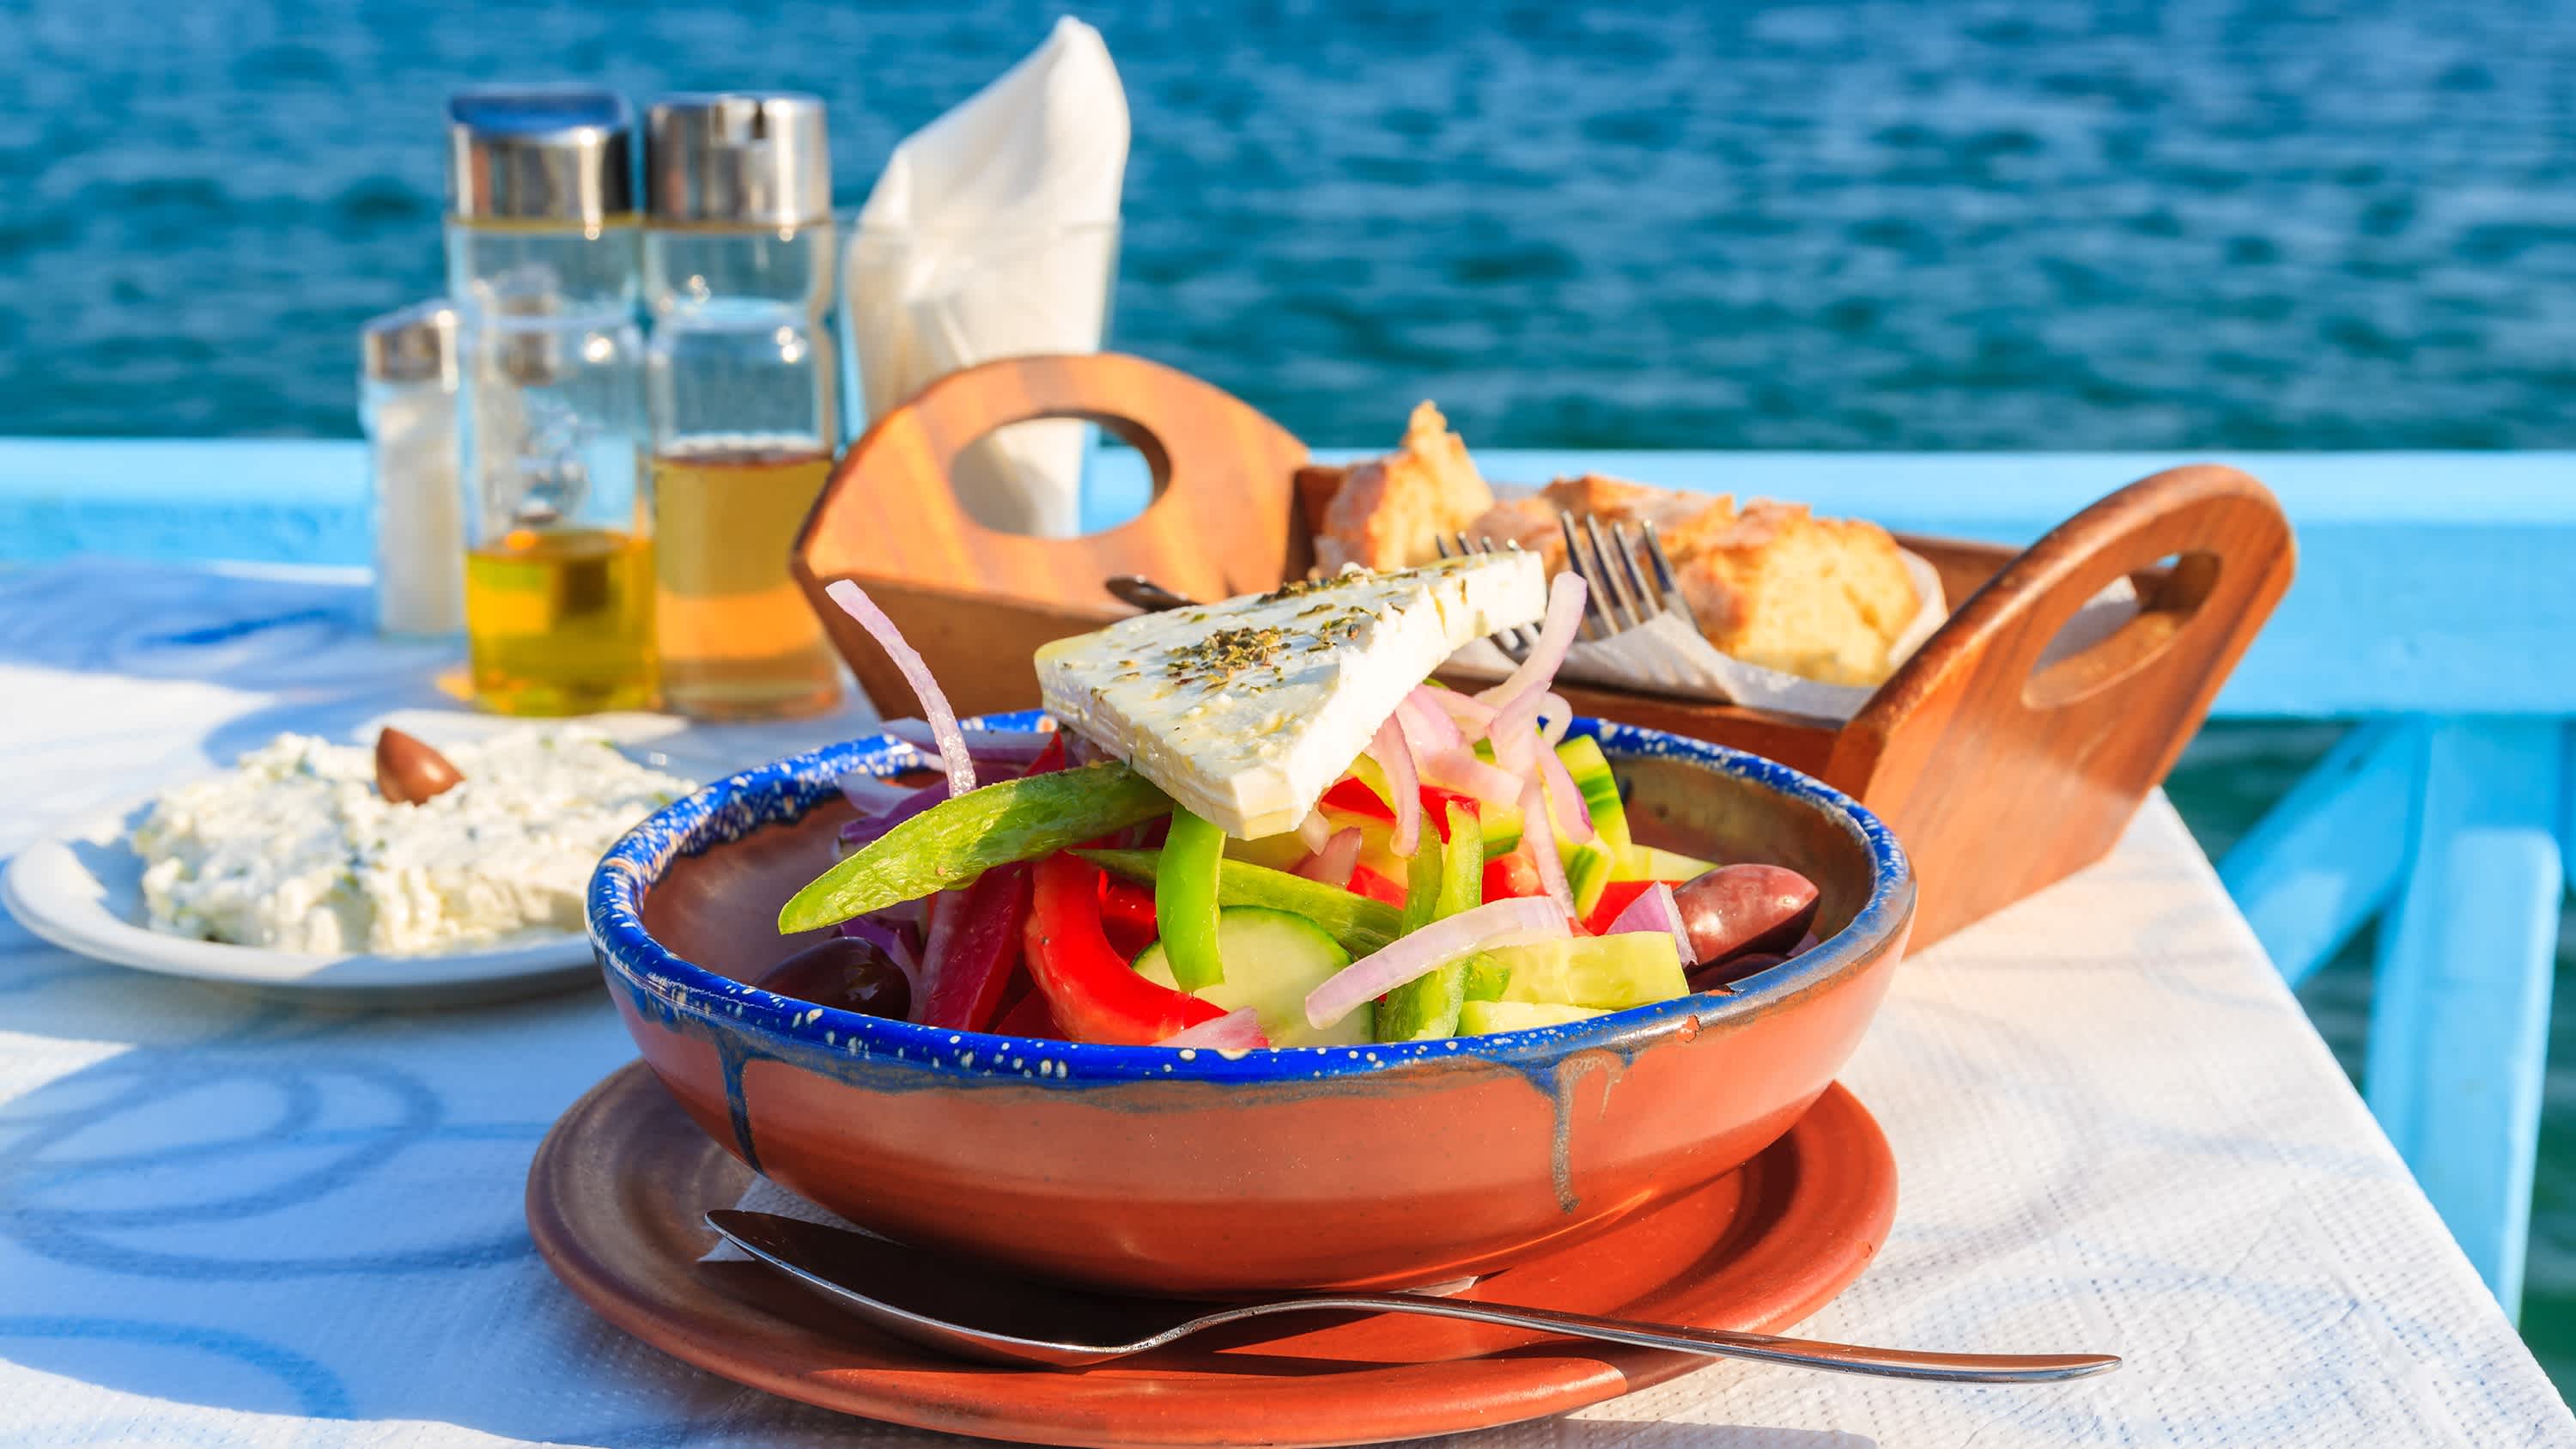 Griechischer Salat am Tisch in griechischen Taverne mit blauen Meerwasser im Hintergrund die Insel Samos, Griechenland

